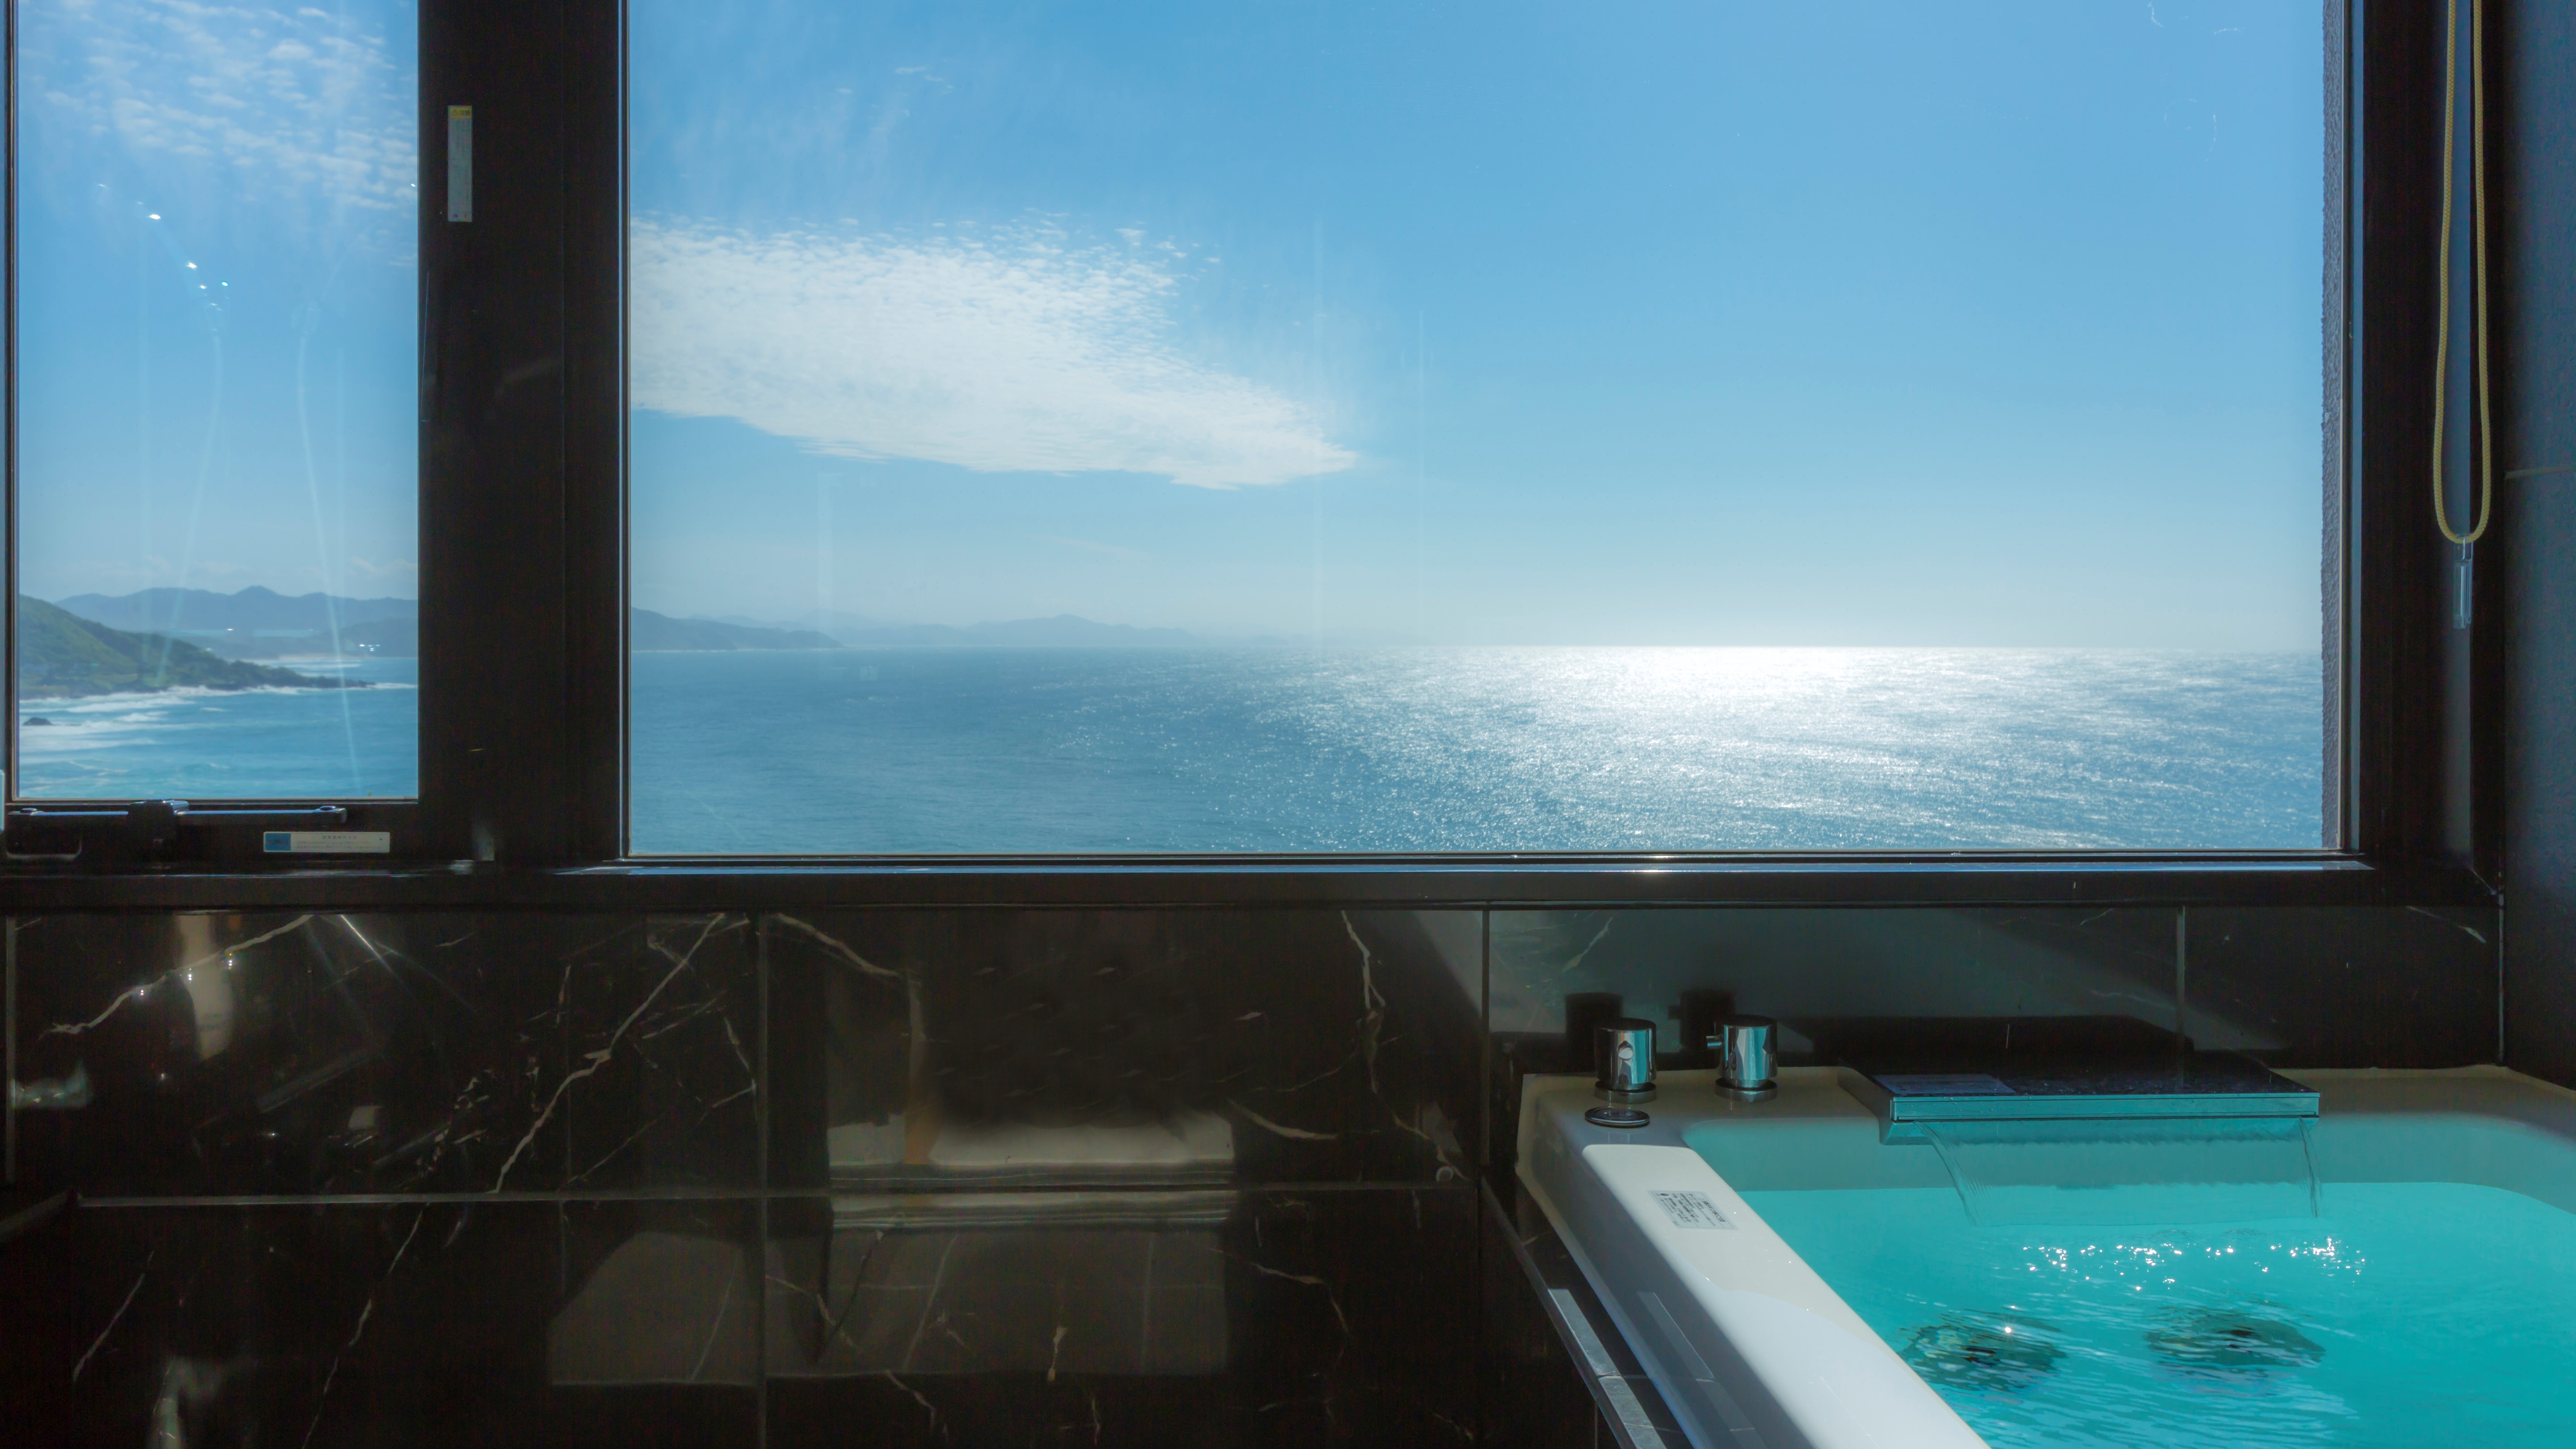 【302・天海】オーシャンビューの客室展望風呂からも、美しい海が一望できます。